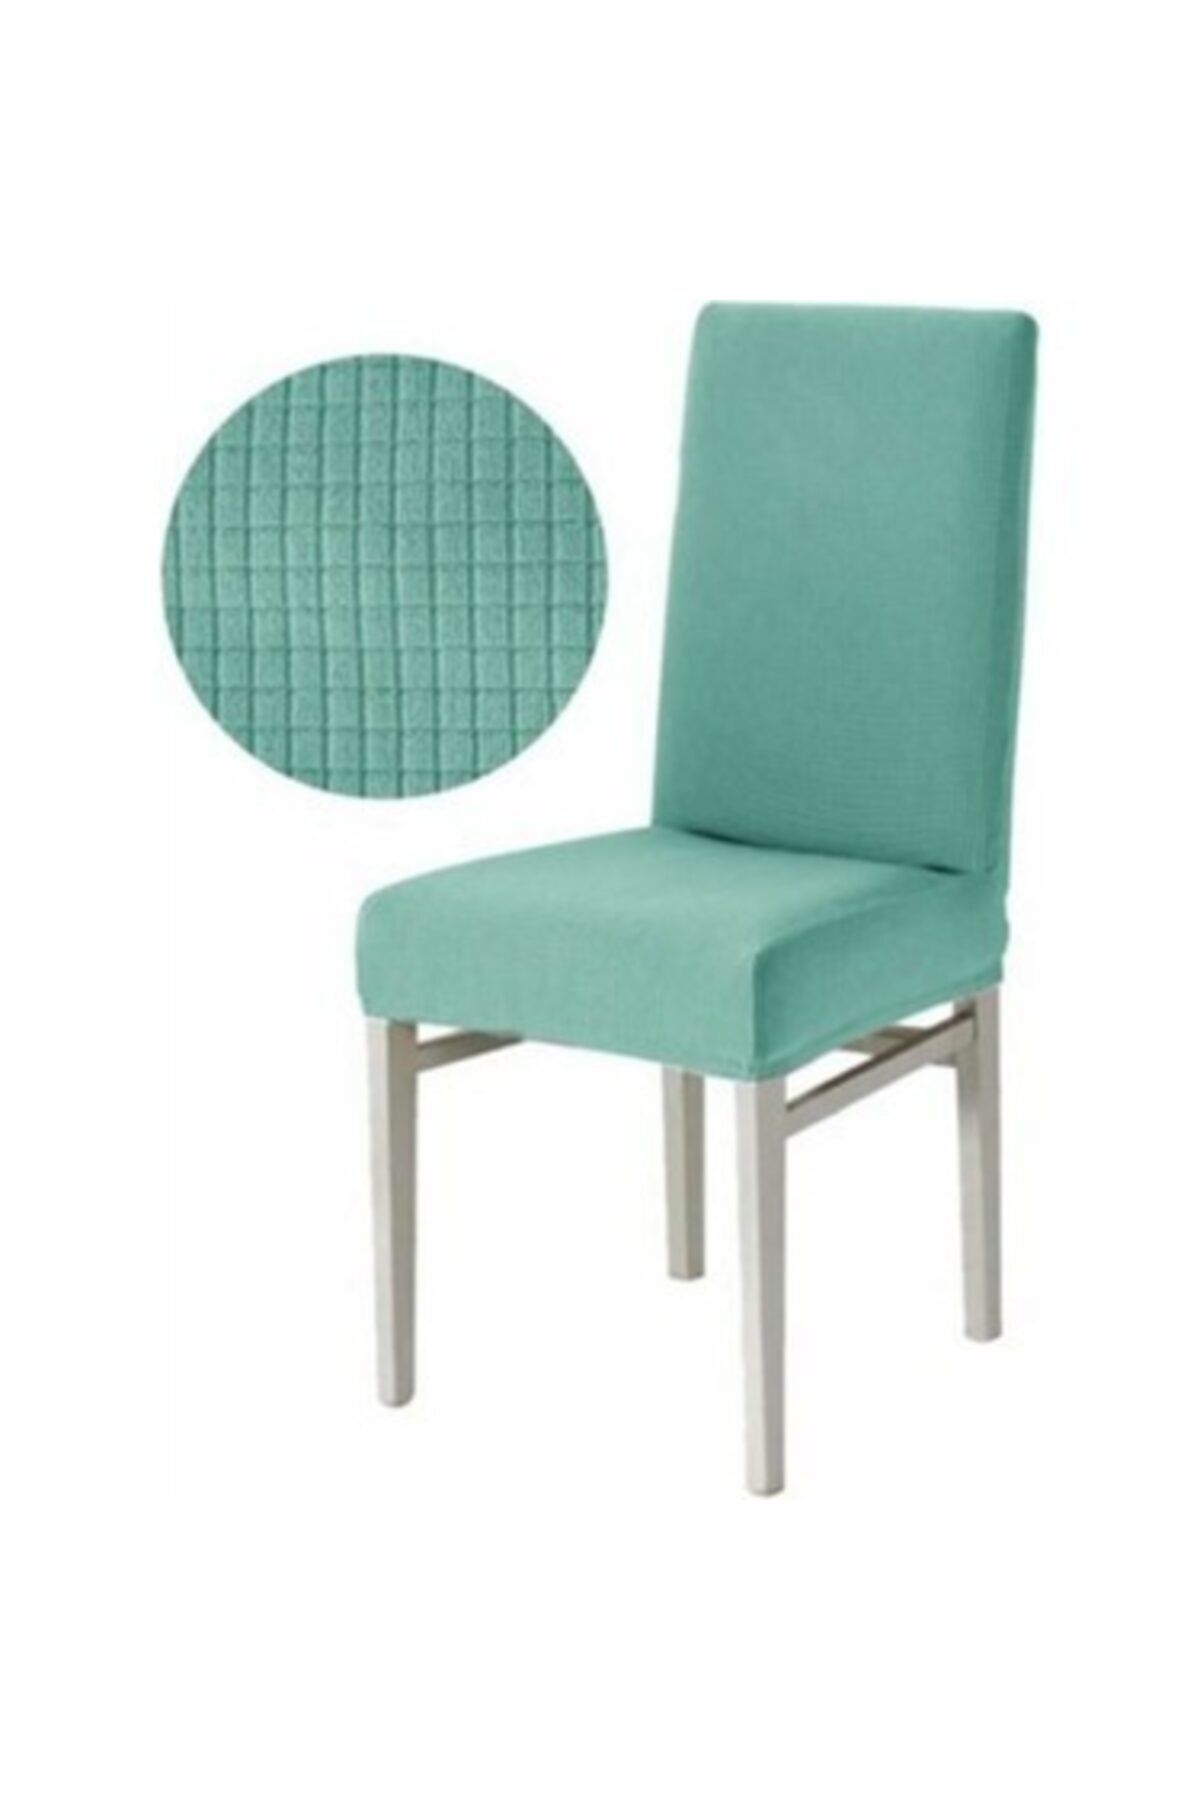 HaNemCe Sandalye Kılıfı Likralı , Yıkanabilir 6 Adet Mint Yeşili